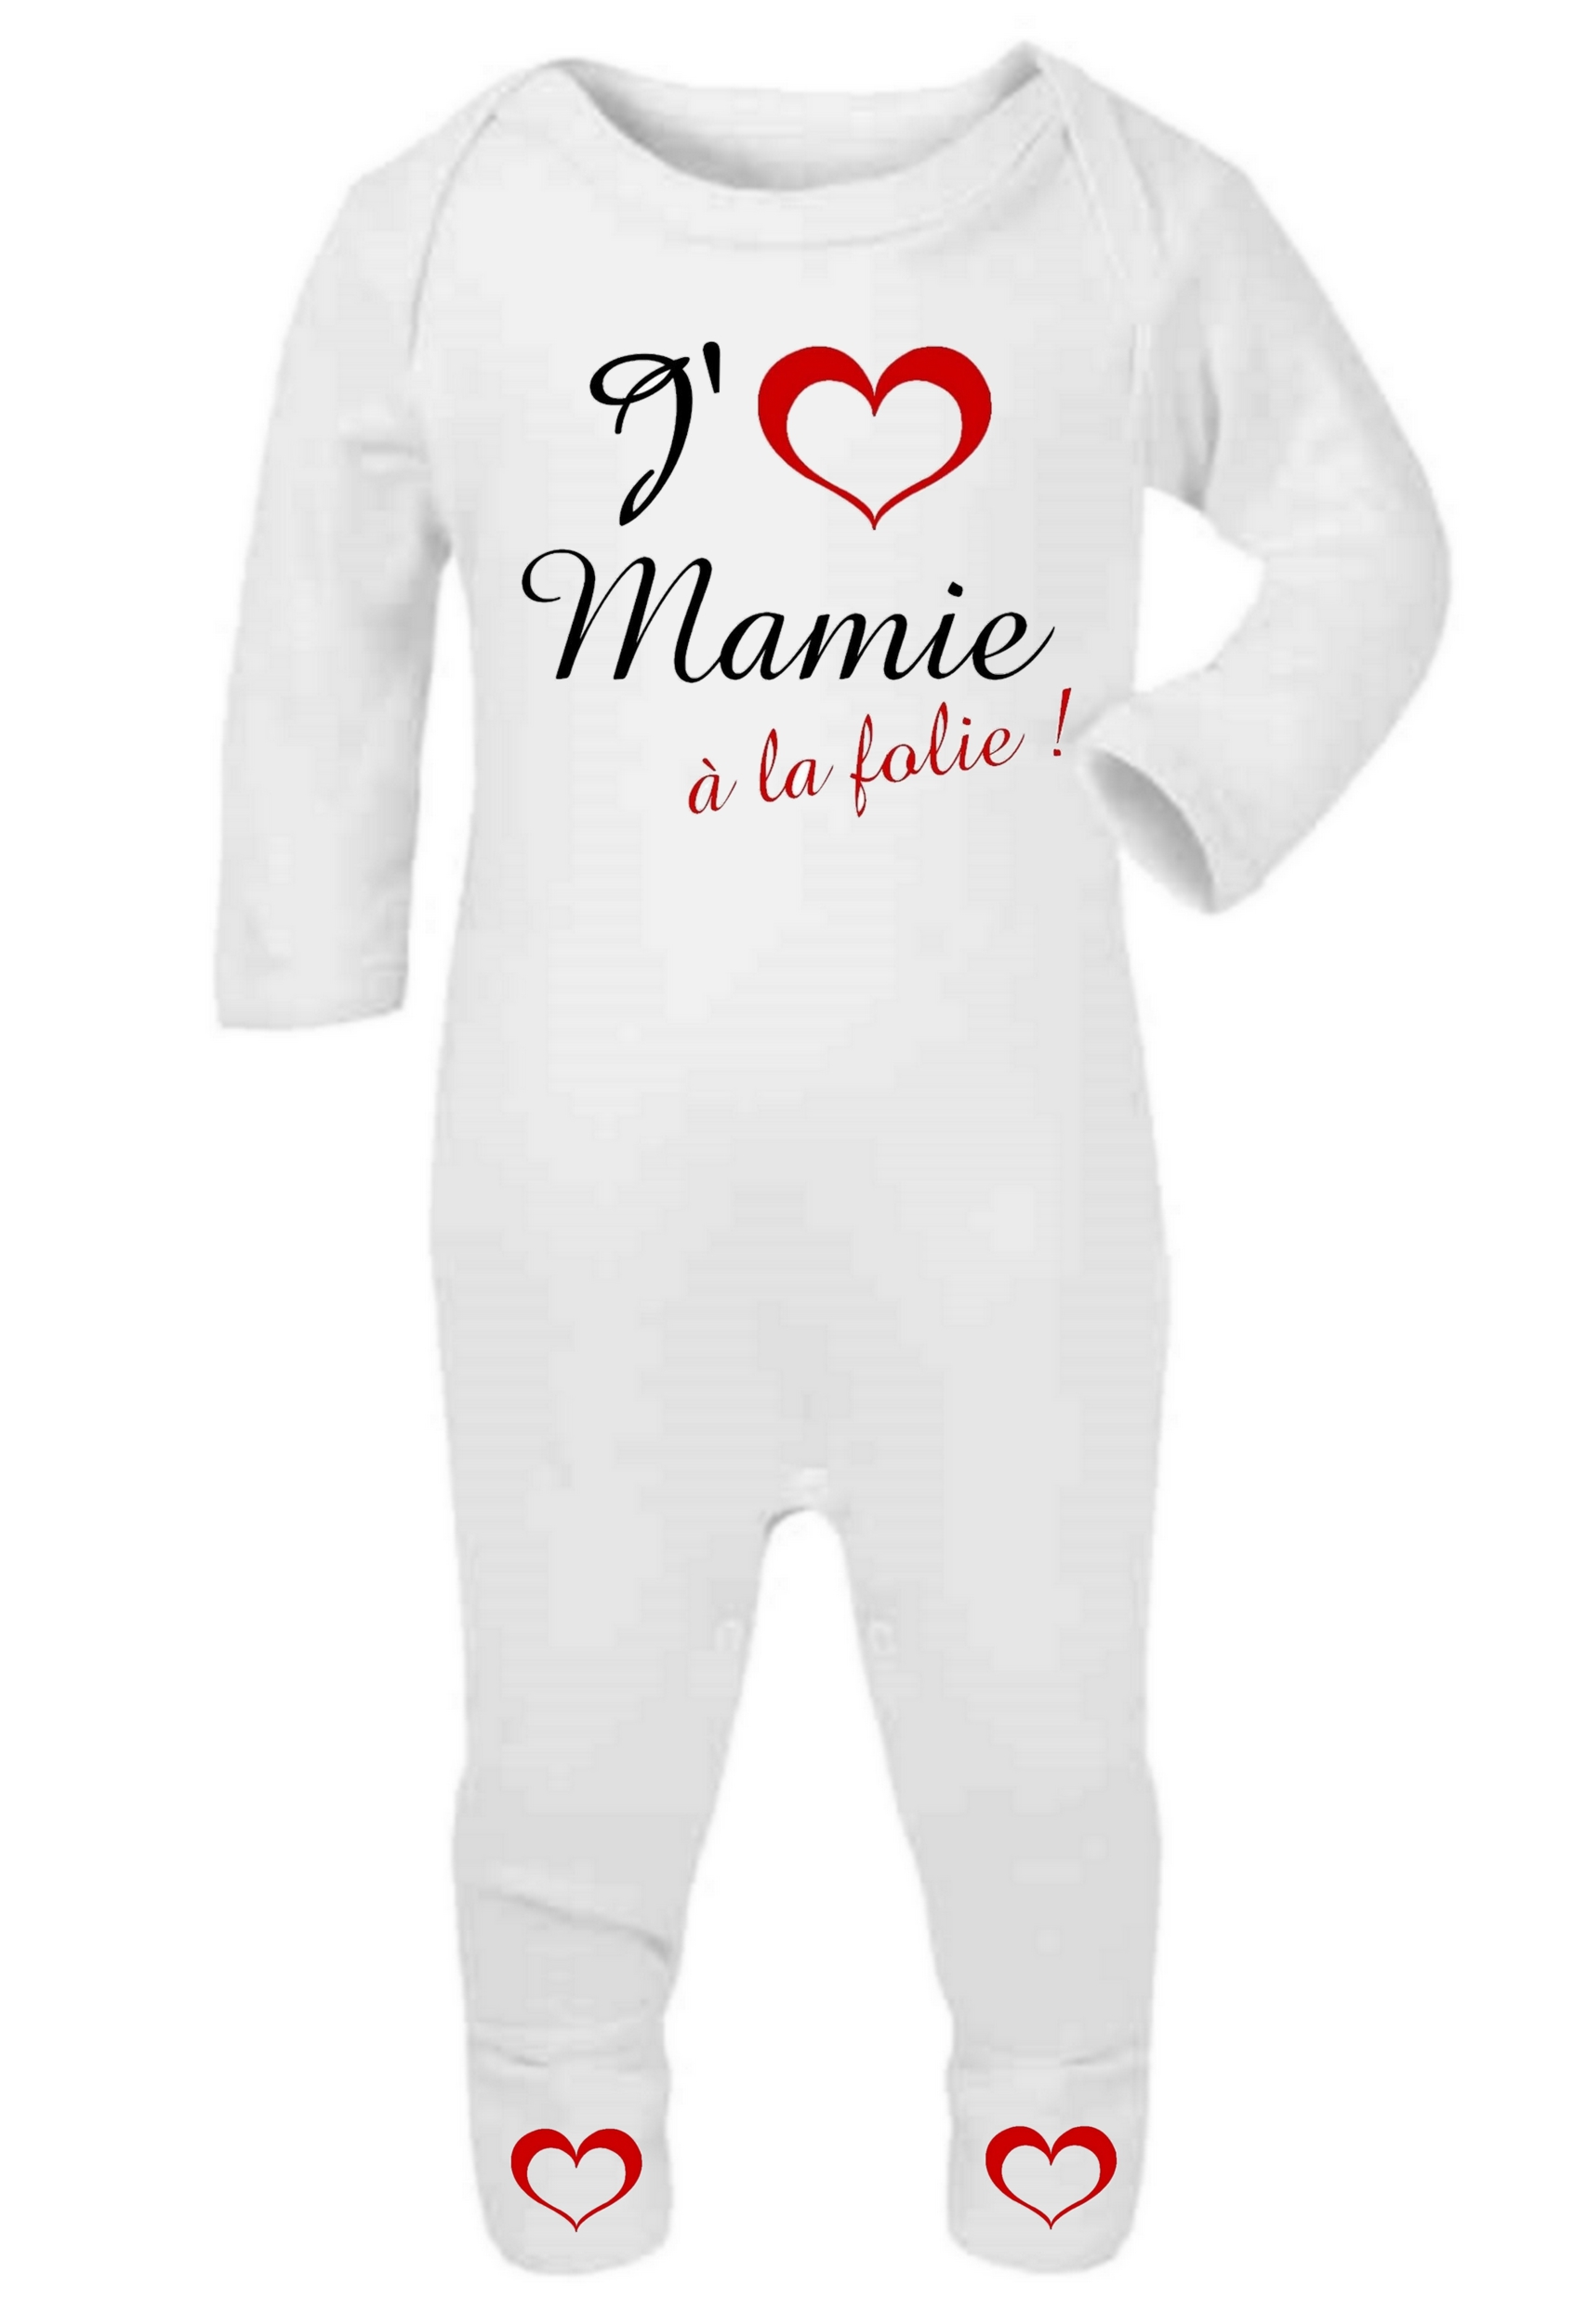 Mamie pyjama